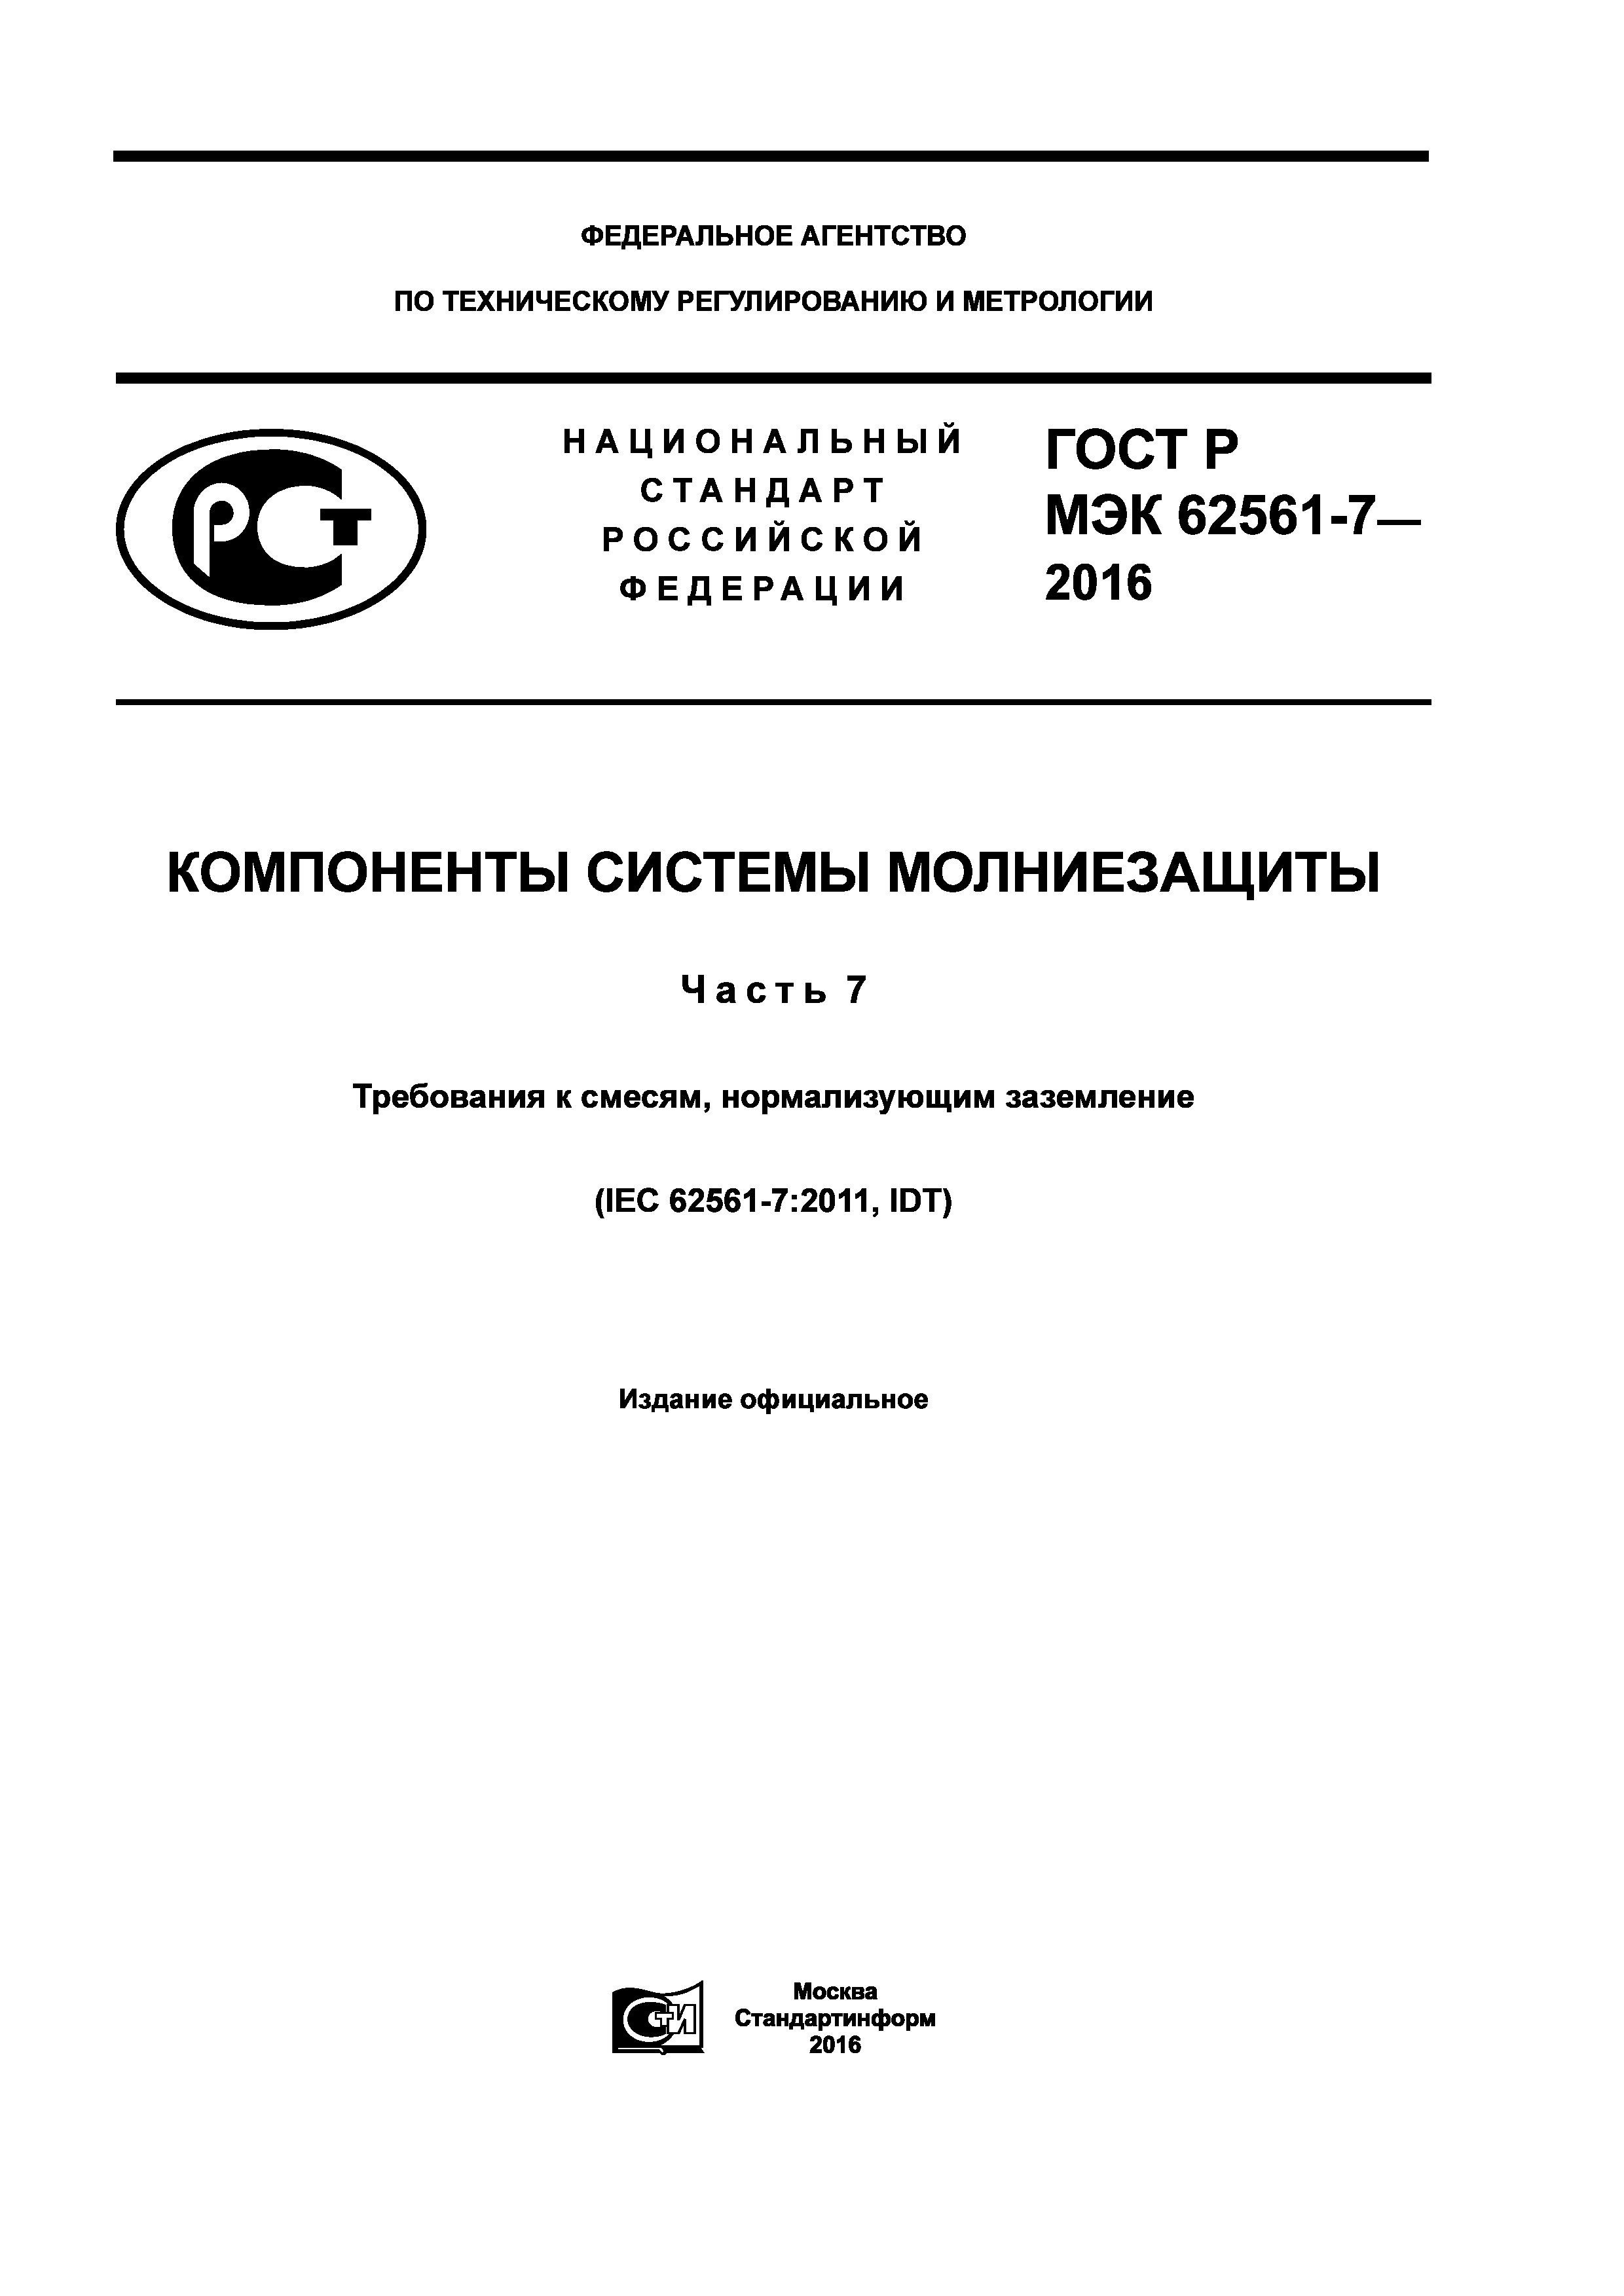 ГОСТ Р МЭК 62561-7-2016